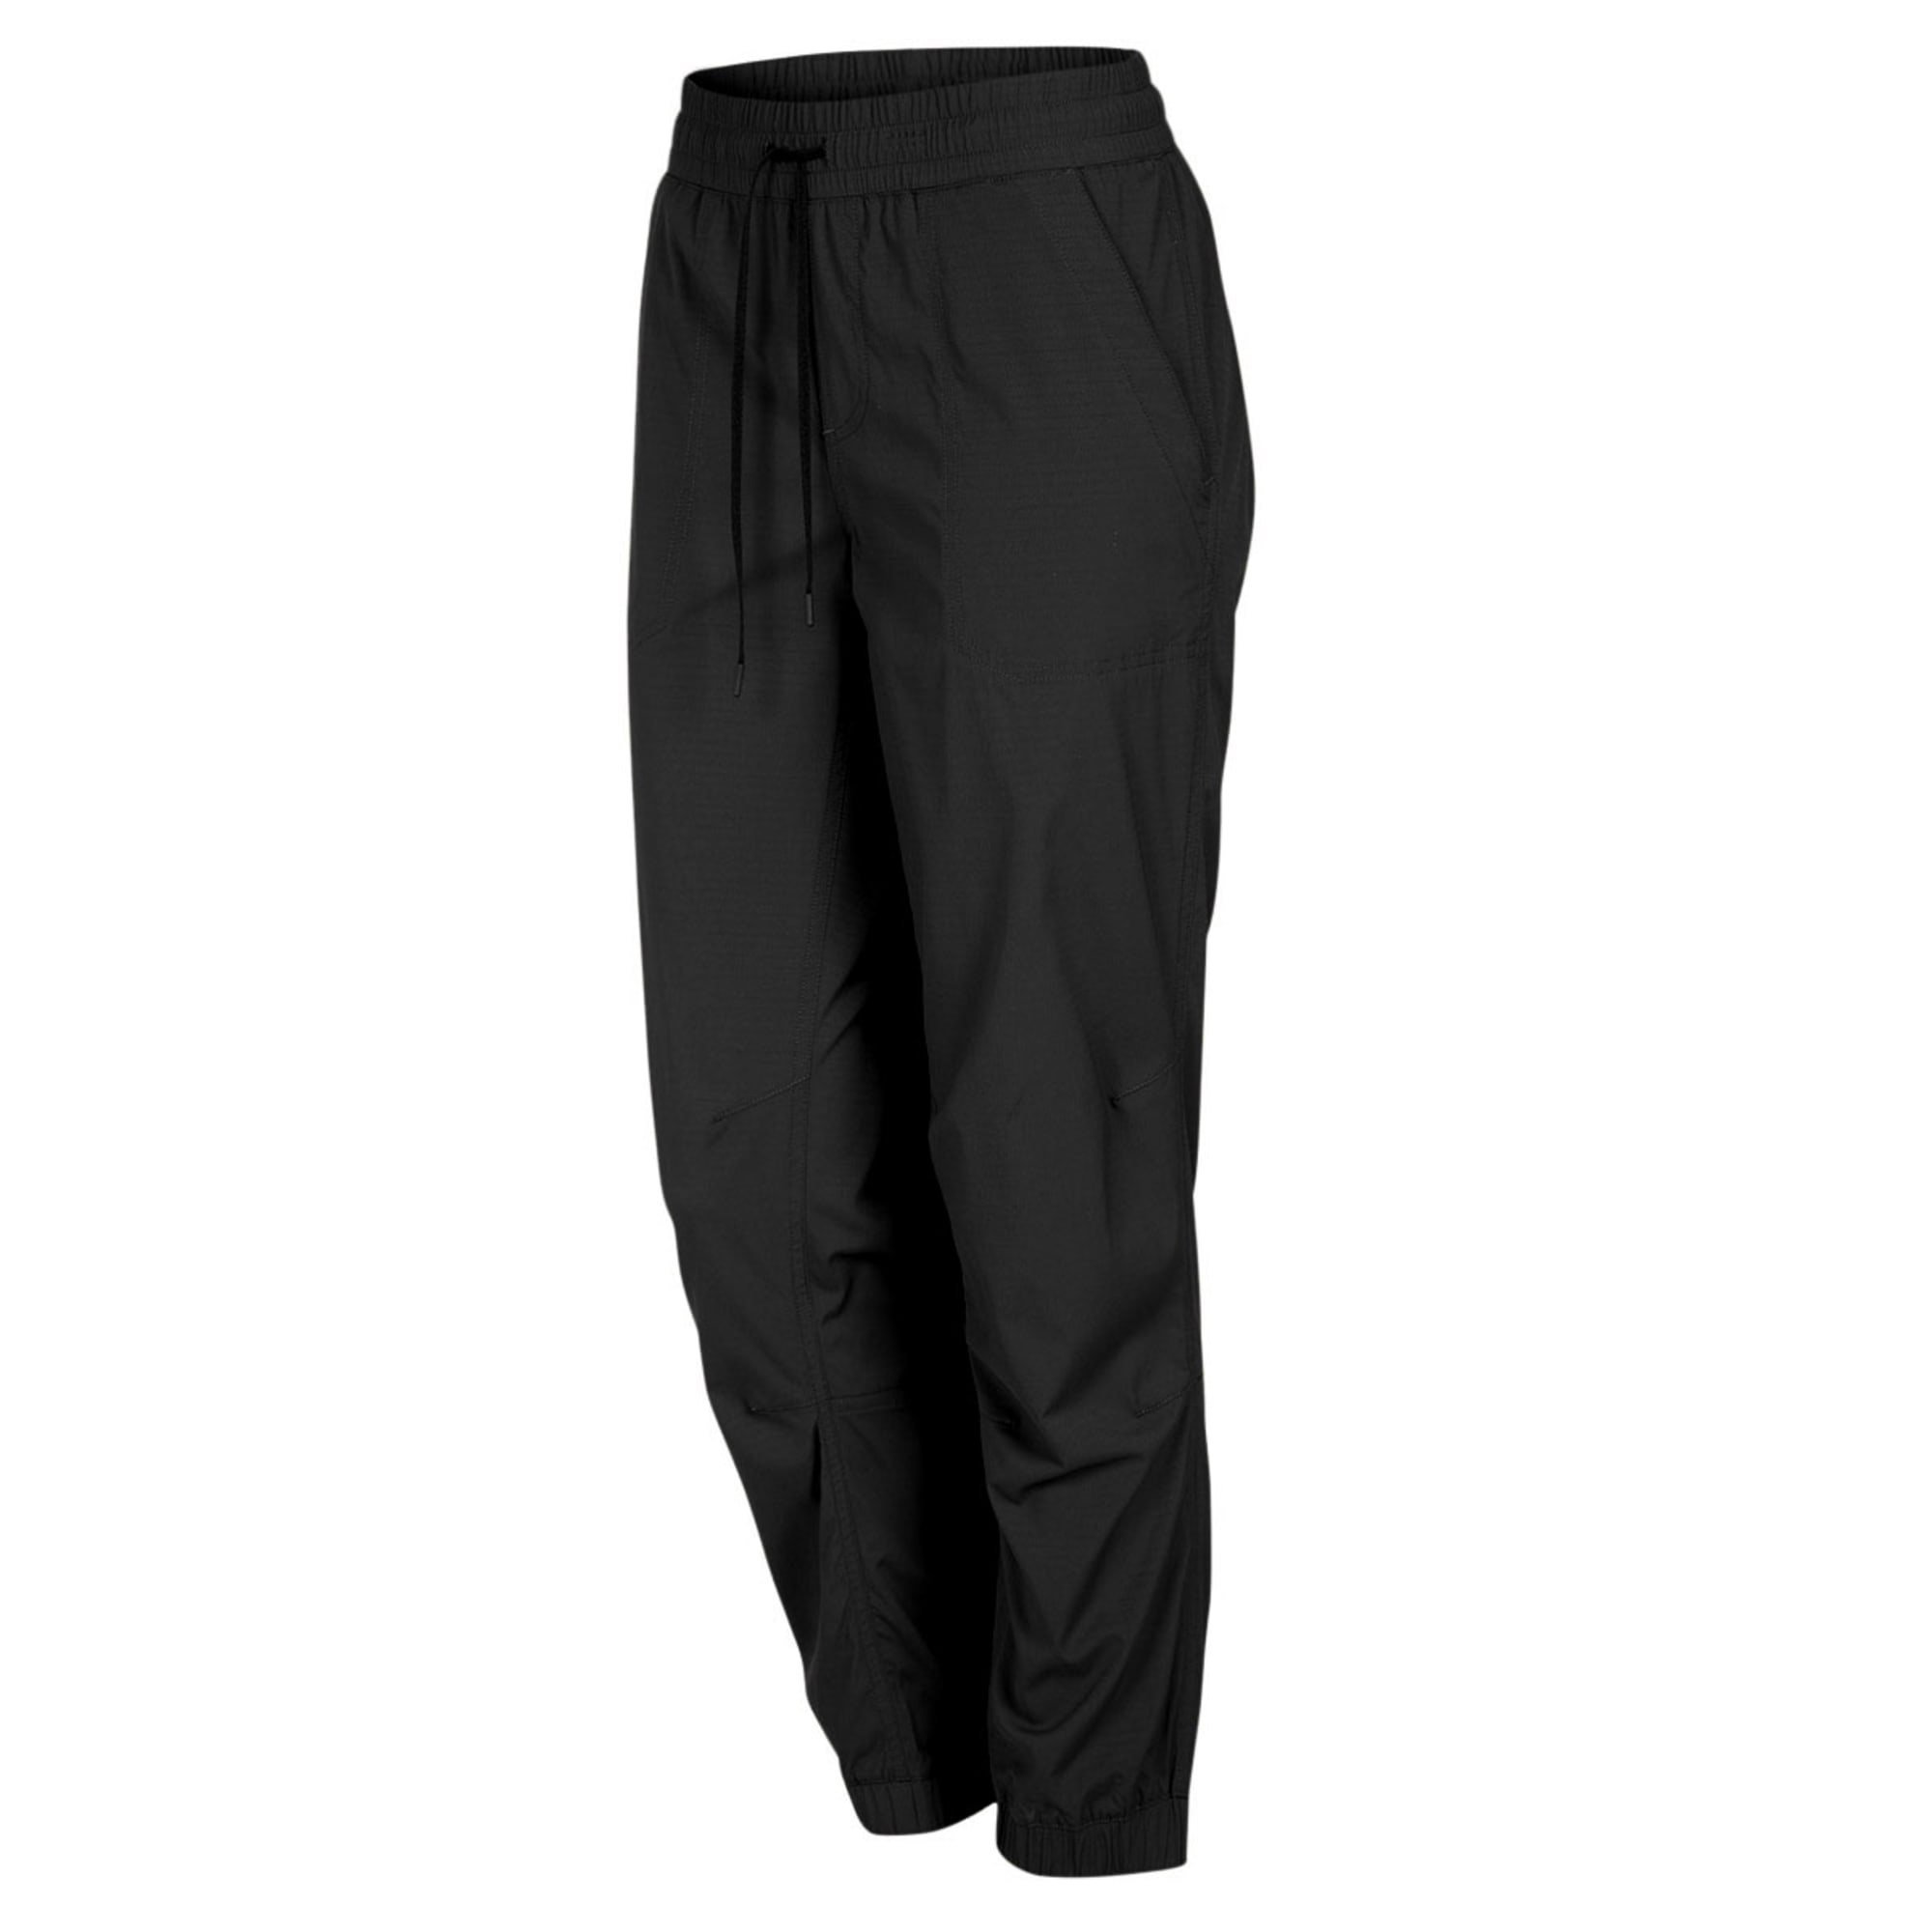 Eastern Mountain Sports EMS® Women's Techwick Allegro Jogger Pants - Macy's